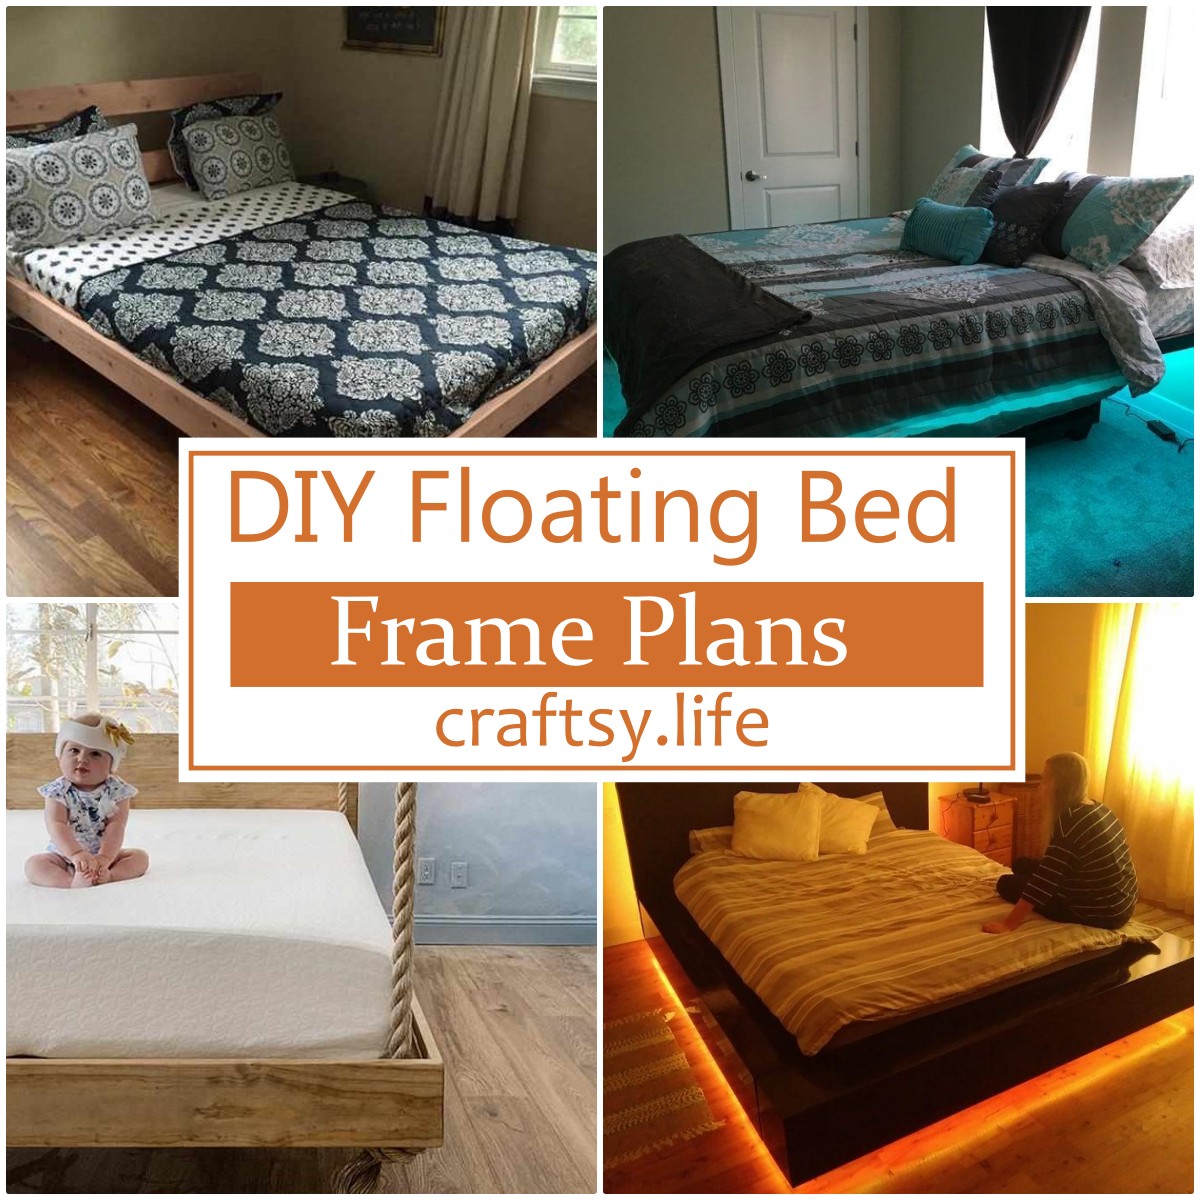 DIY Floating Bed Frame Plans